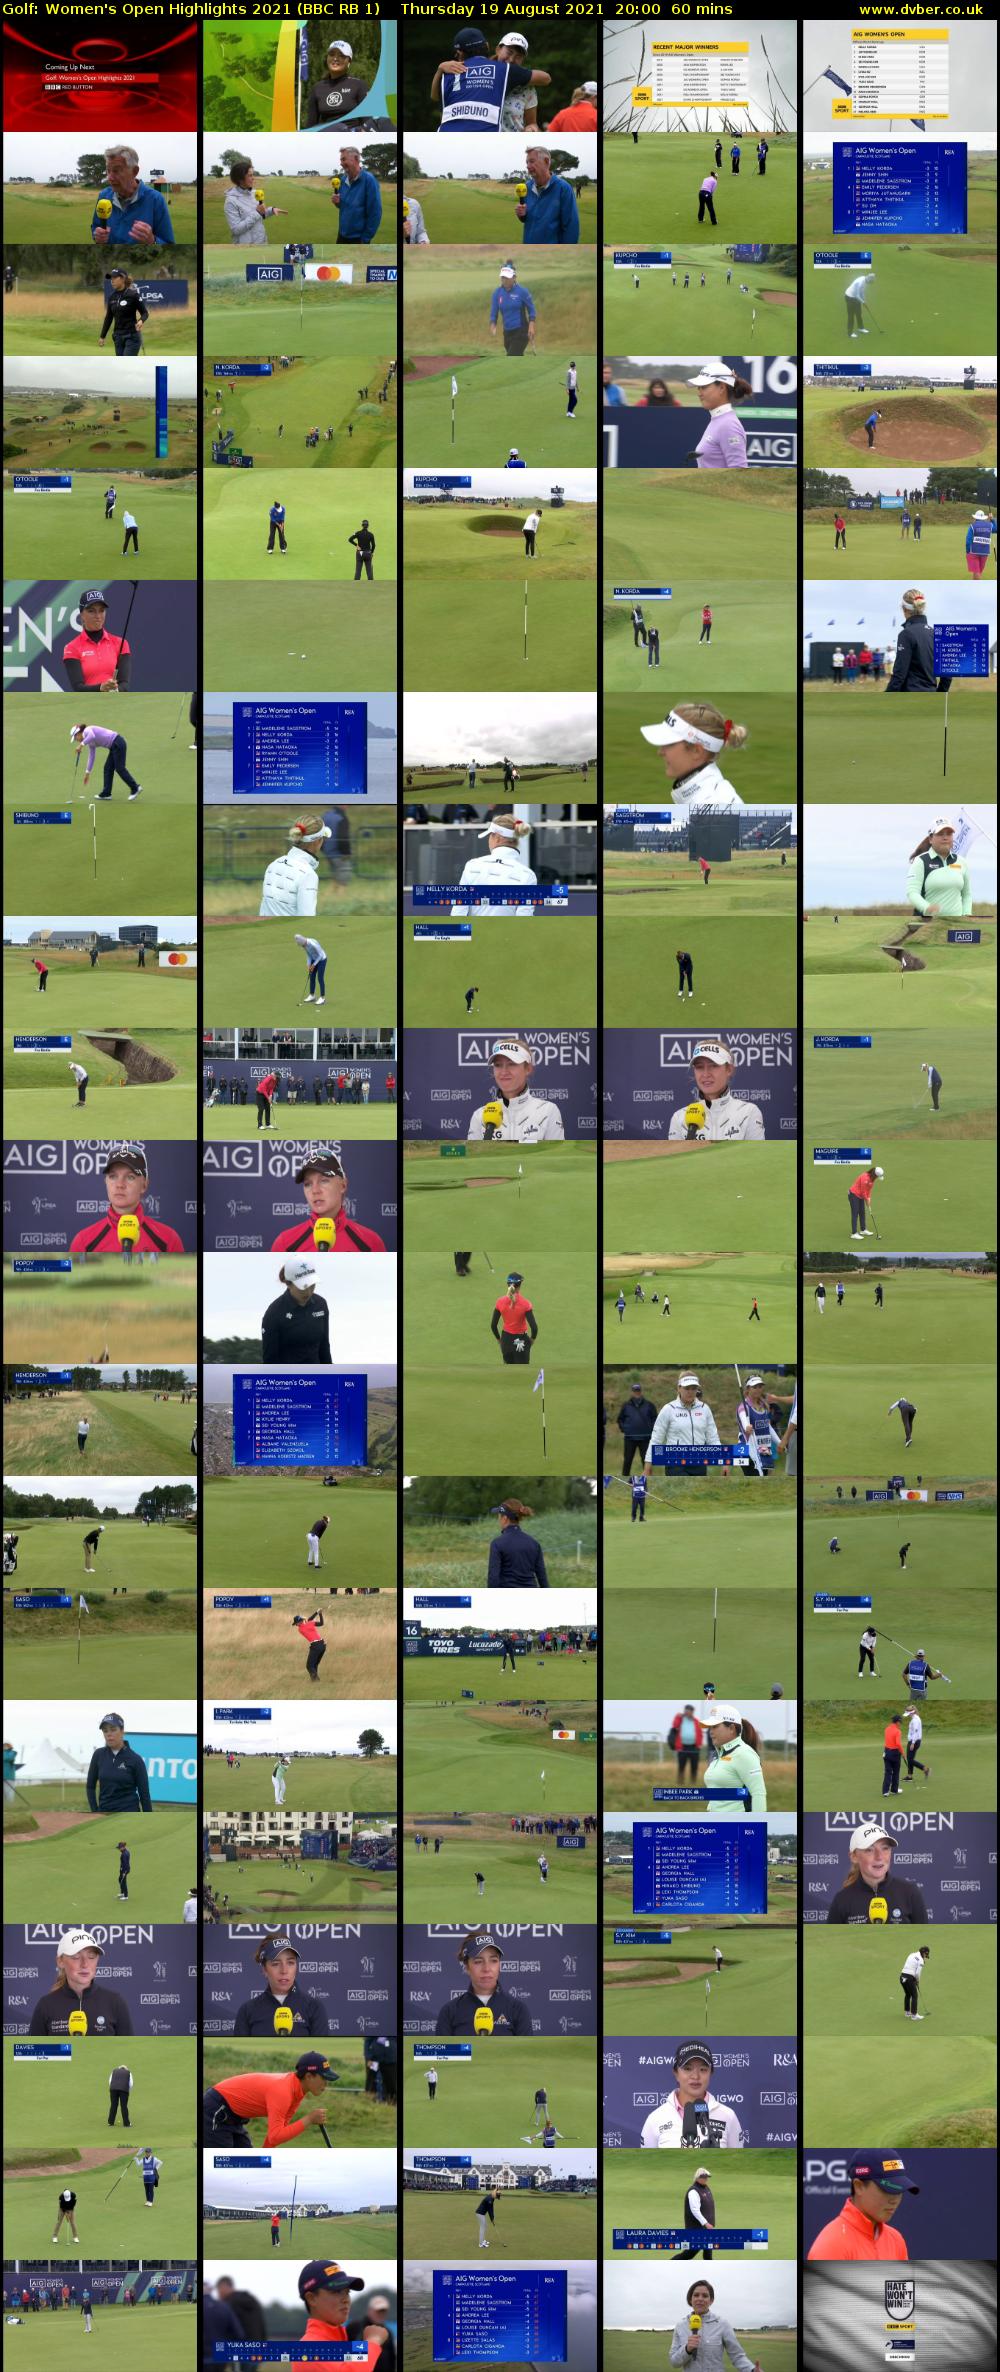 Golf: Women's Open Highlights 2021 (BBC RB 1) Thursday 19 August 2021 20:00 - 21:00